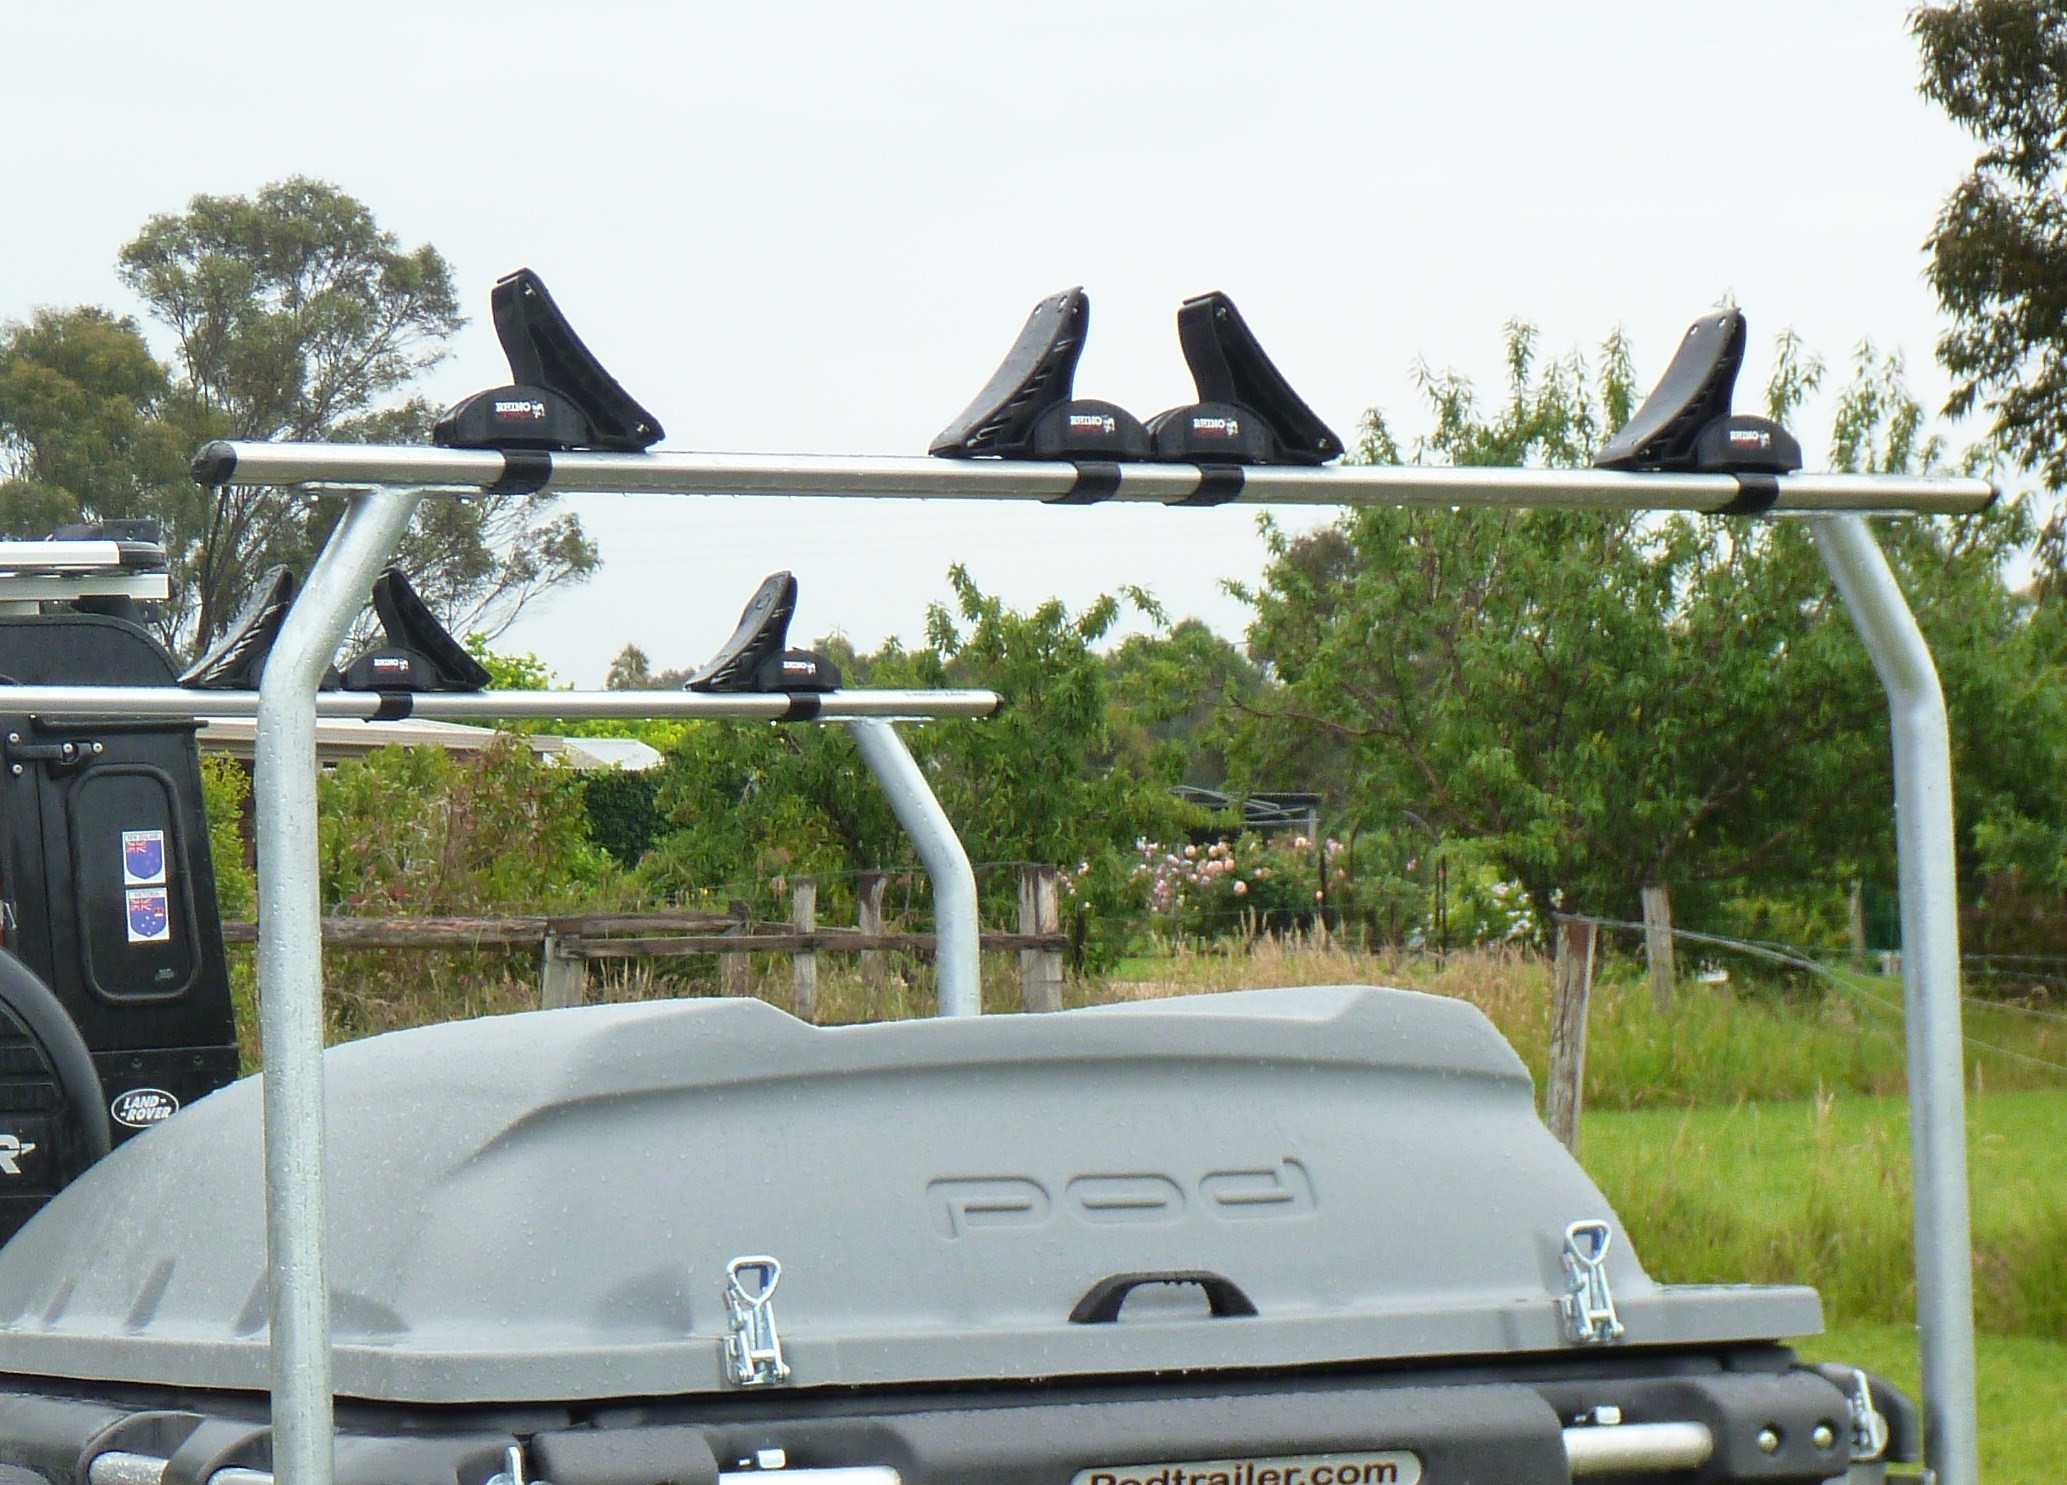 Rhino Kayak Saddles